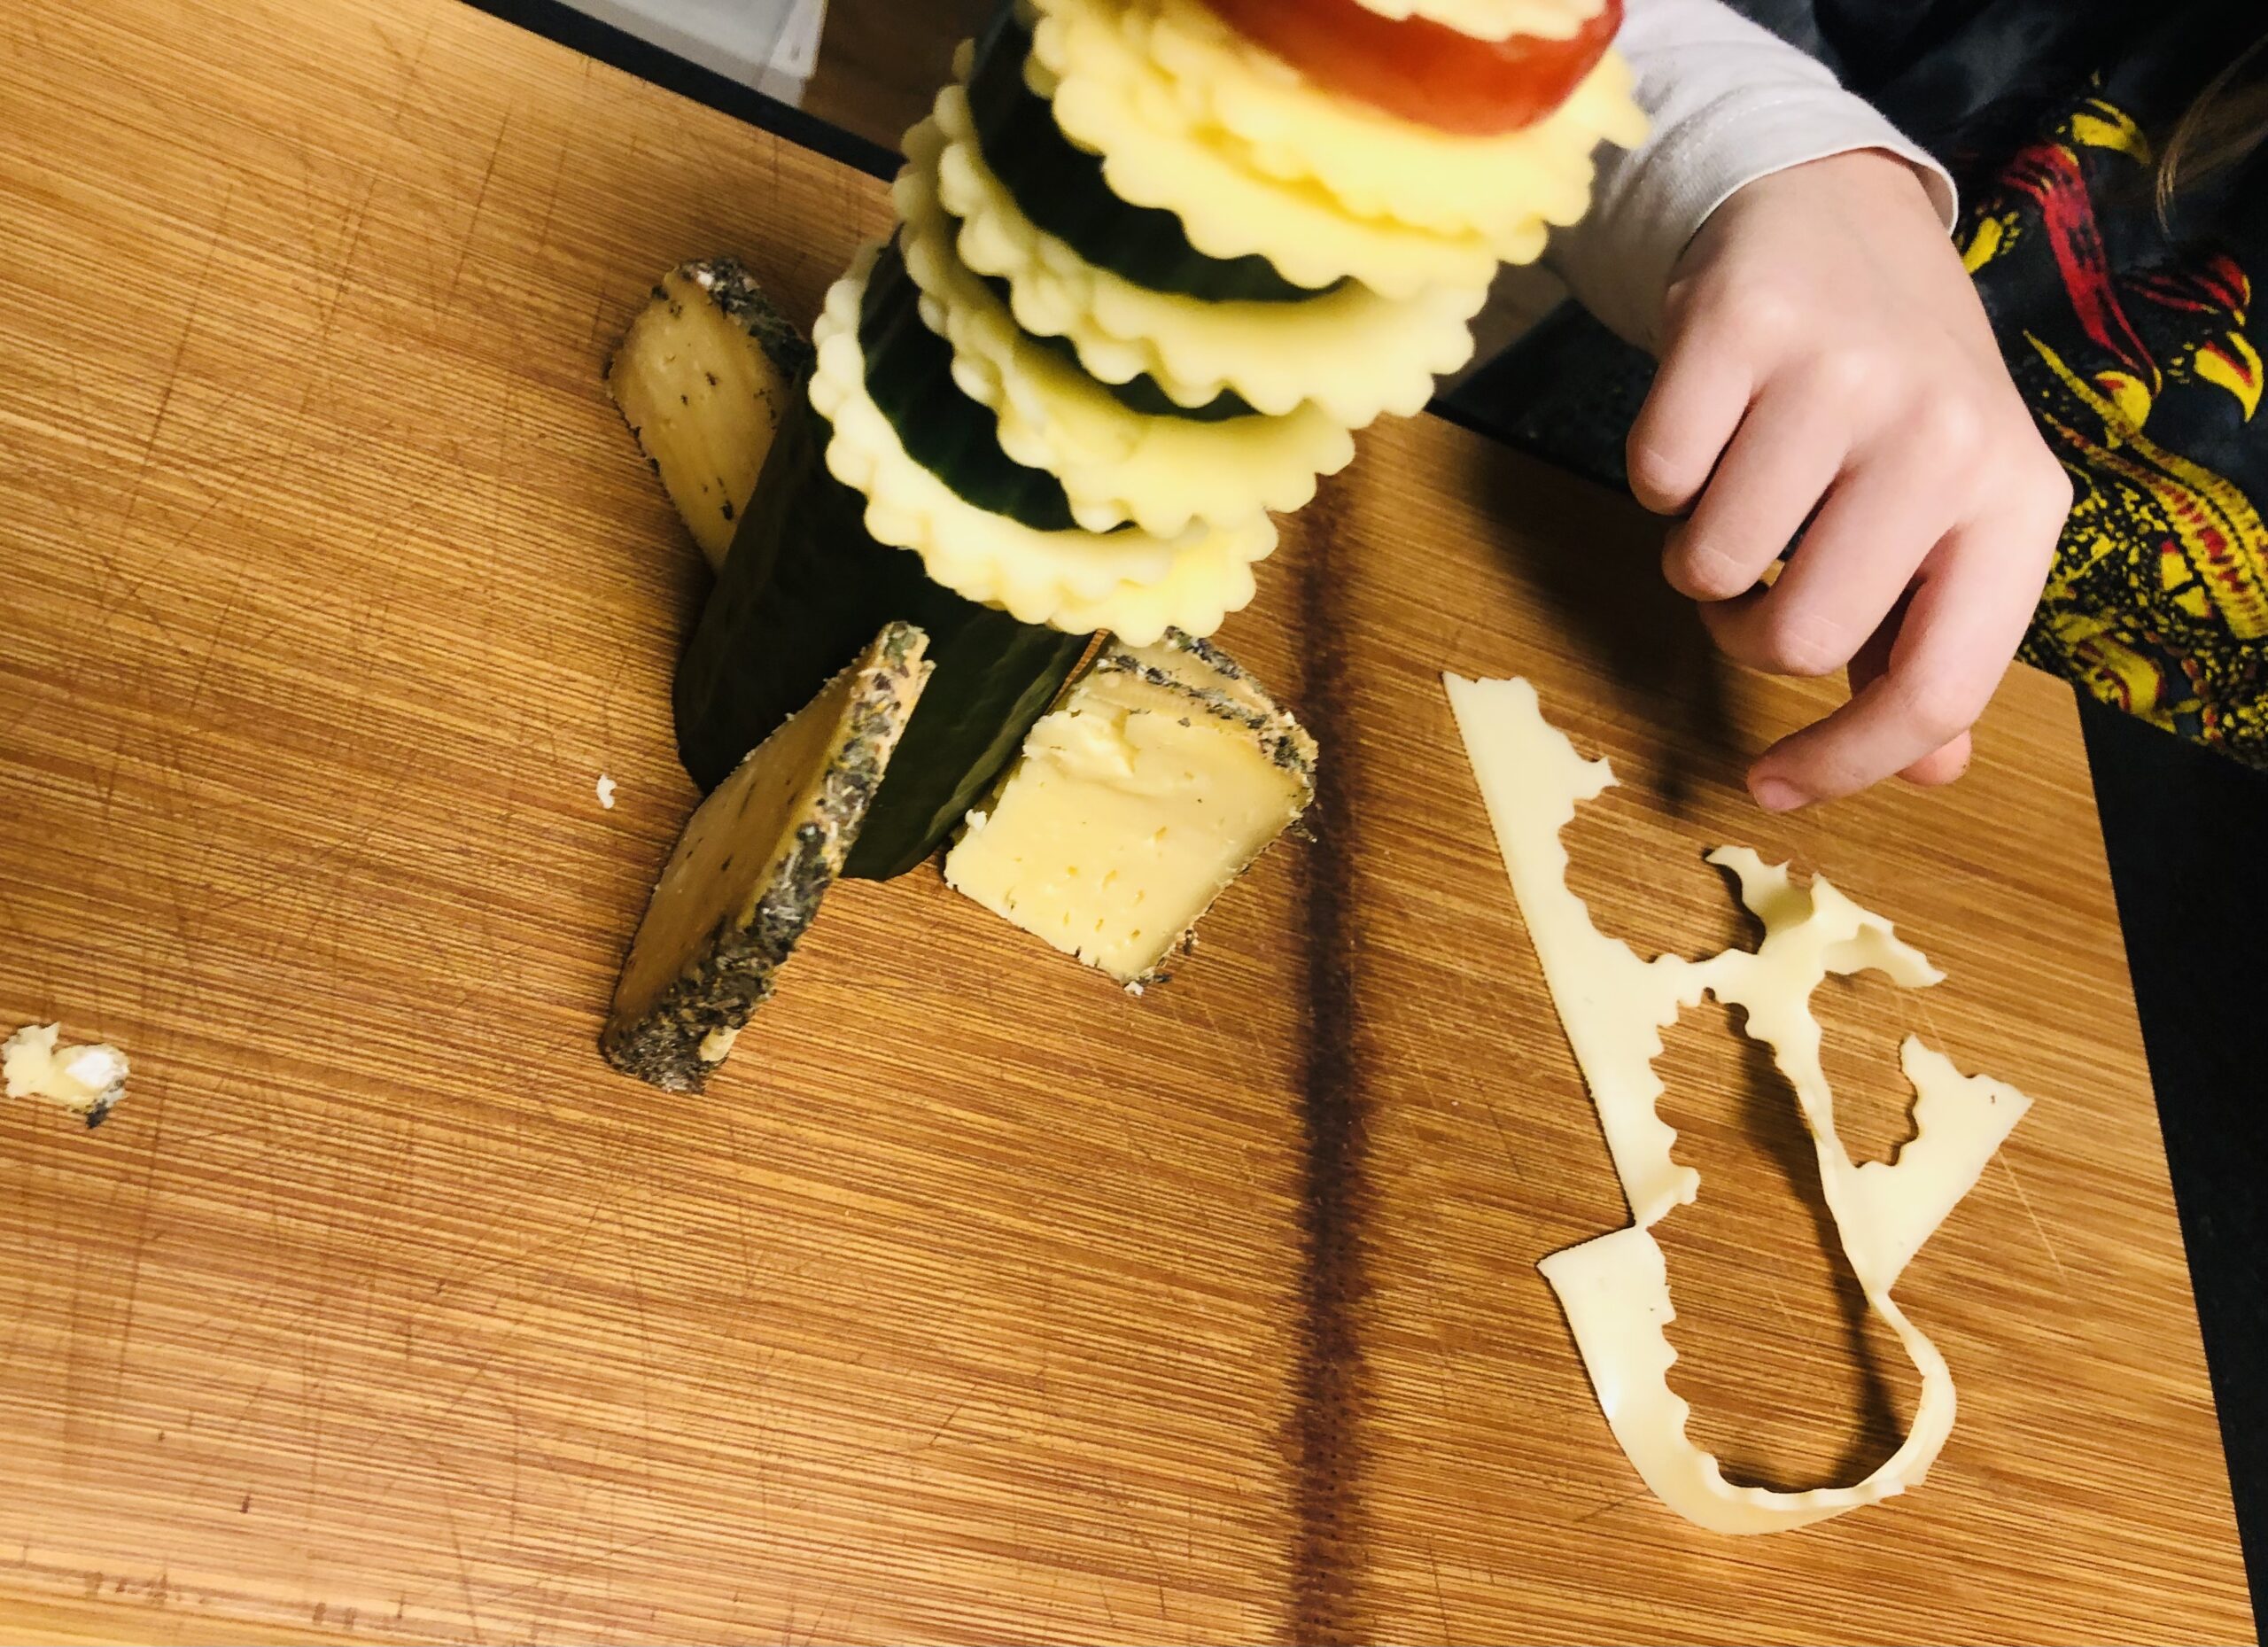 Bild zum Schritt 16 für das Bastel- und DIY-Abenteuer für Kinder: 'Danach dekoriert ihr die Reste des Käses, der Gurken und...'